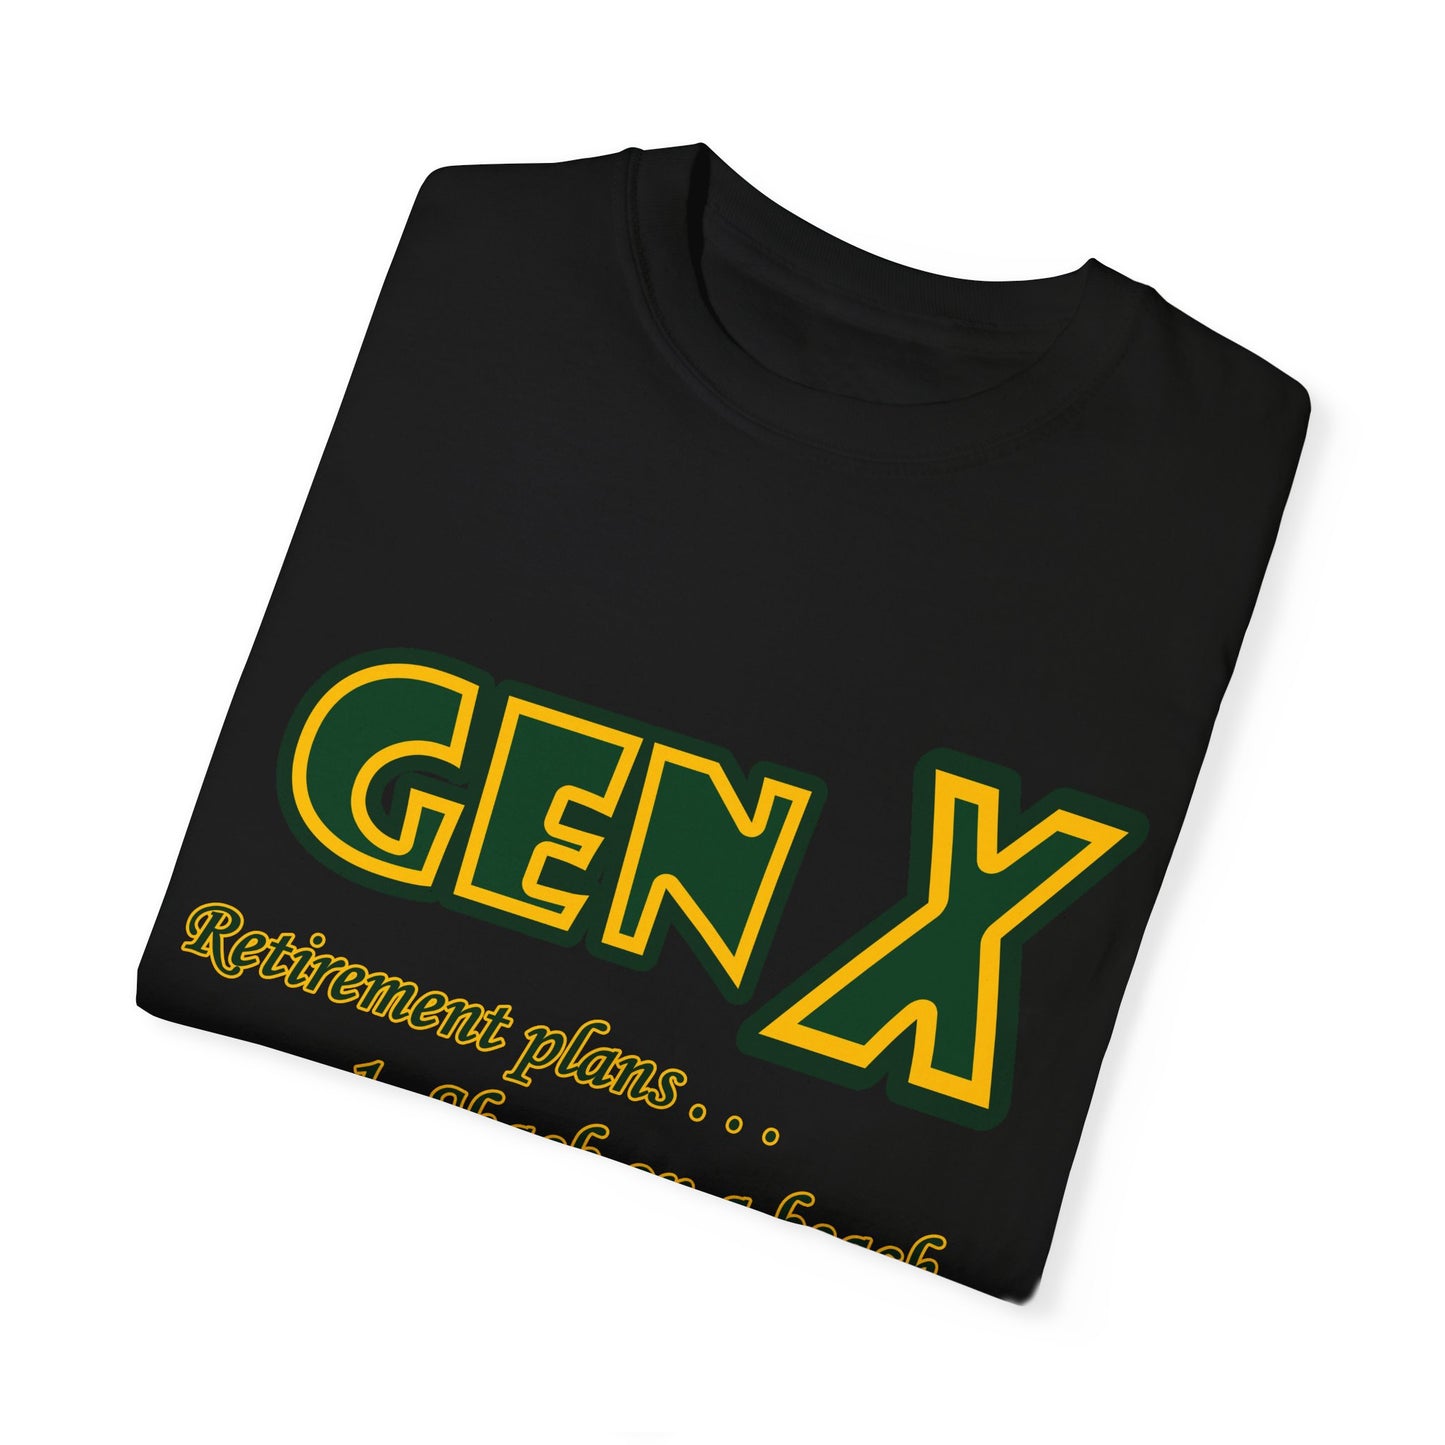 Gen X Shirt